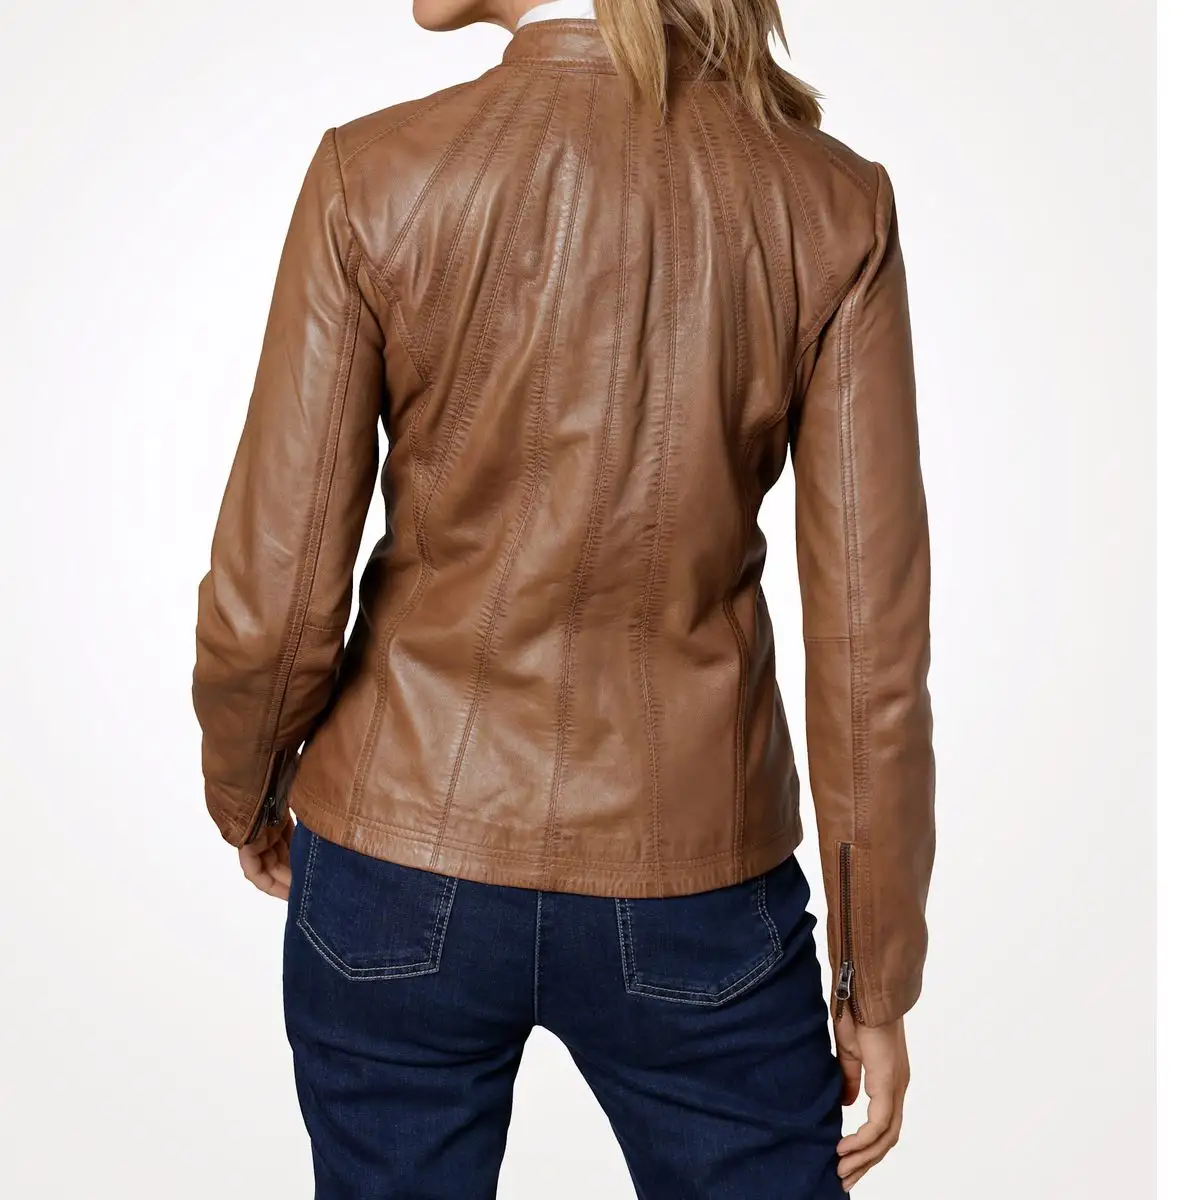 Thương hiệu nổi tiếng Ladies Leather Jacket với màu nâu đứng cổ áo Zip Up phụ nữ áo khoác